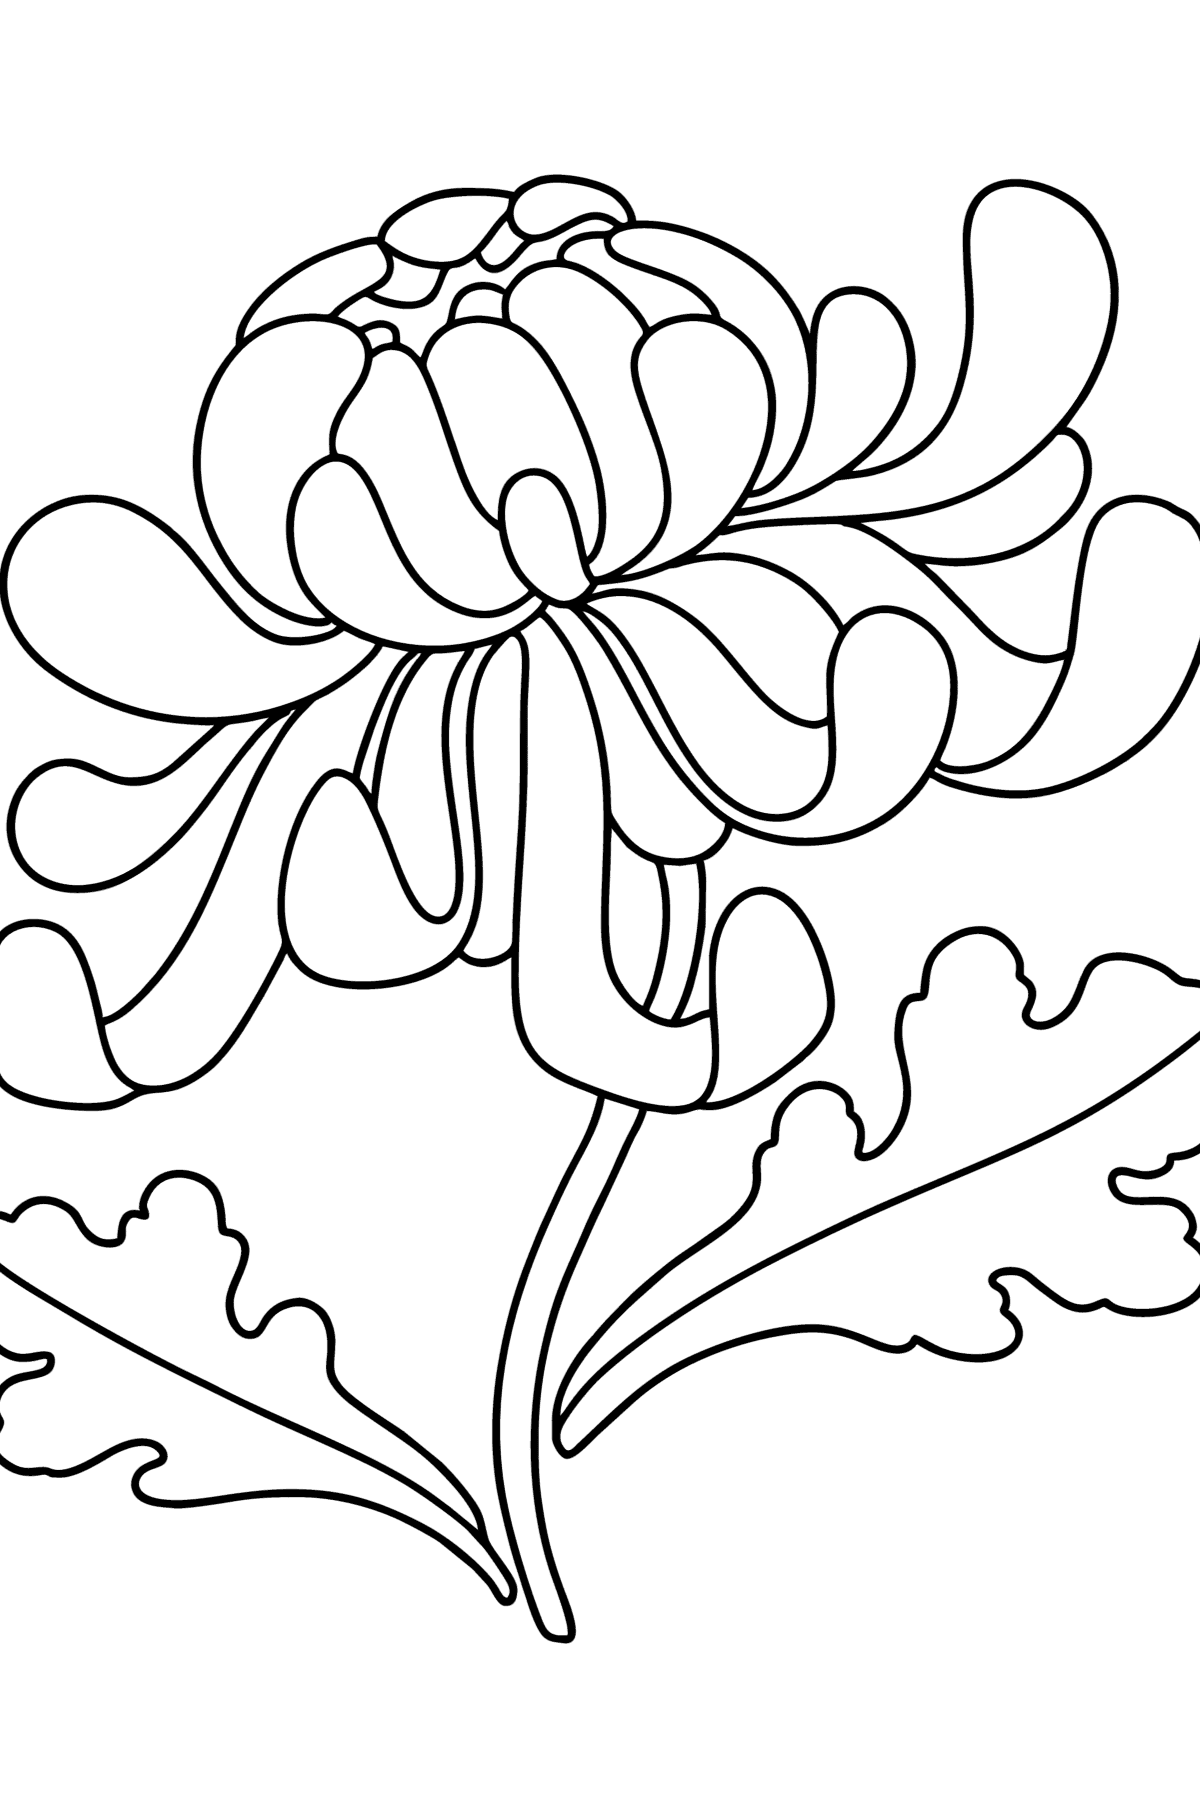 Dibujo de Crisantemos para colorear - Dibujos para Colorear para Niños